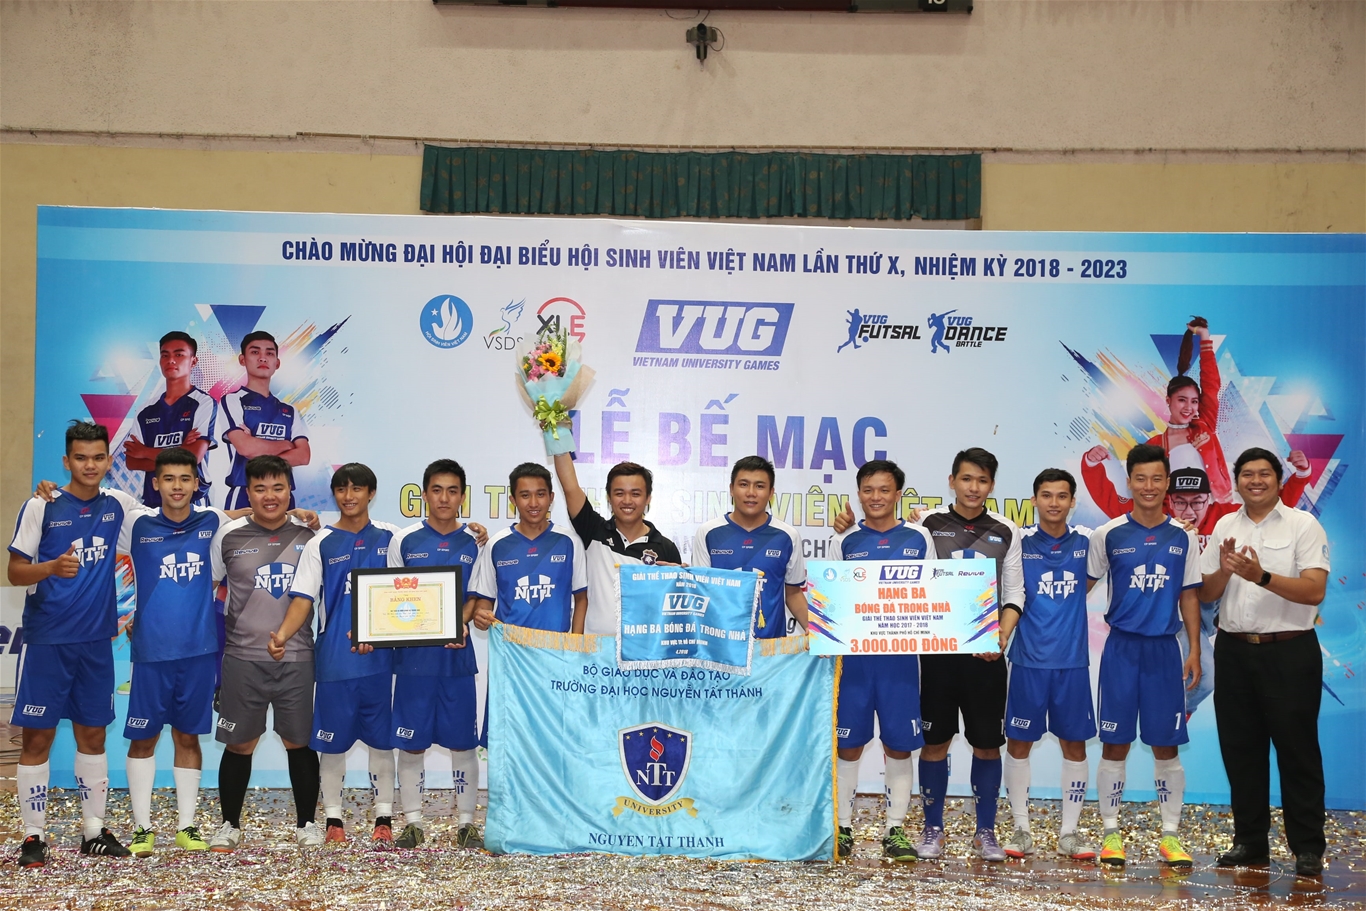 Bế mạc Giải Thể thao sinh viên Việt Nam (VUG) năm học 2017 - 2018 khu vực TP. Hồ Chí Minh tại Nhà Thi đấu Tân Bình